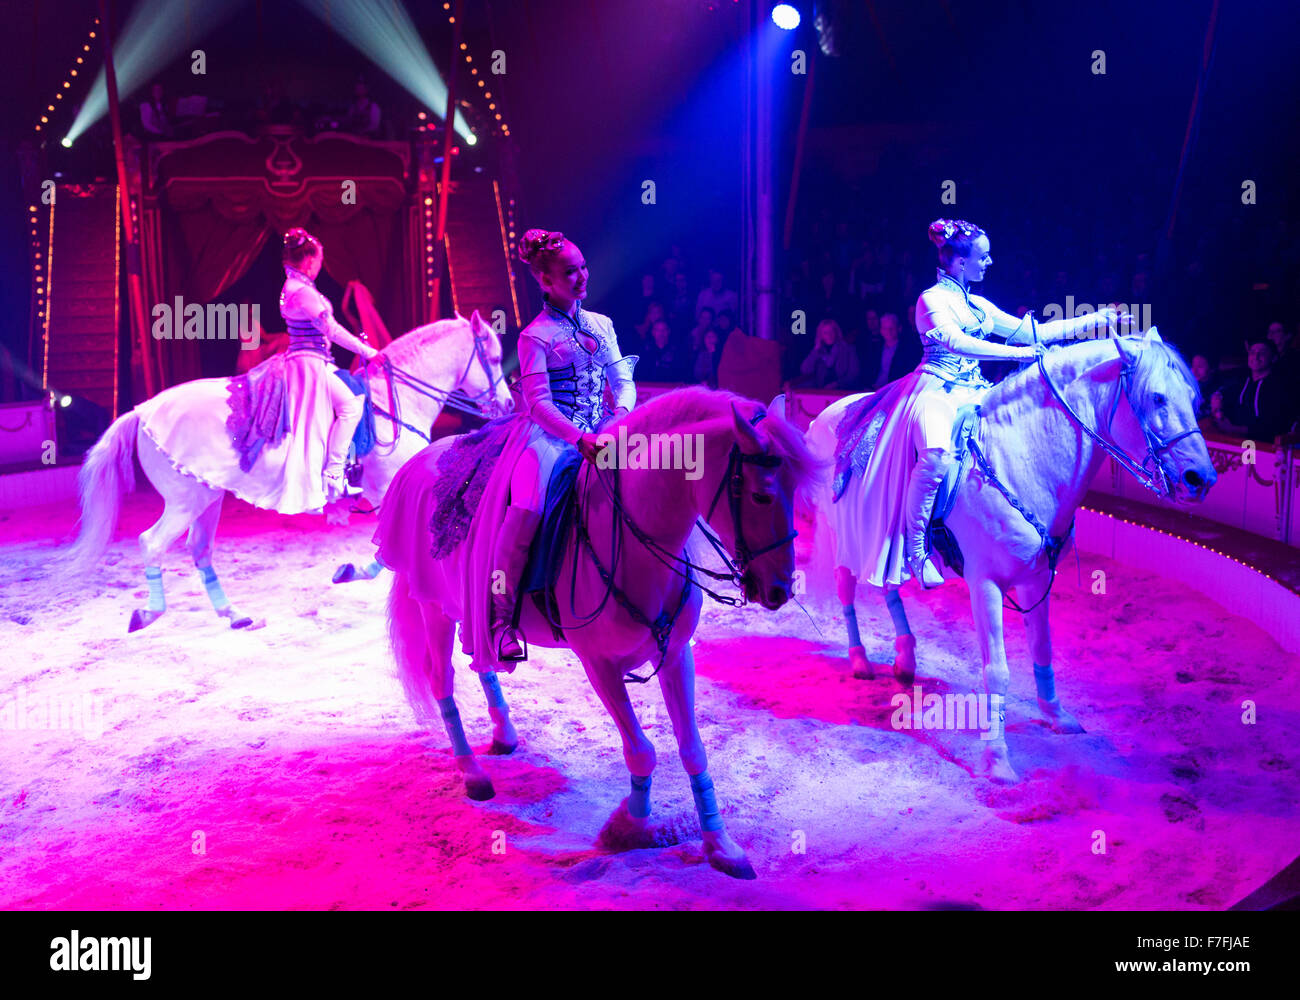 Los artistas del circo Roncalli (la familia con sus caballos Saabel) realice su espectáculo 'Salto vitale". Foto de stock